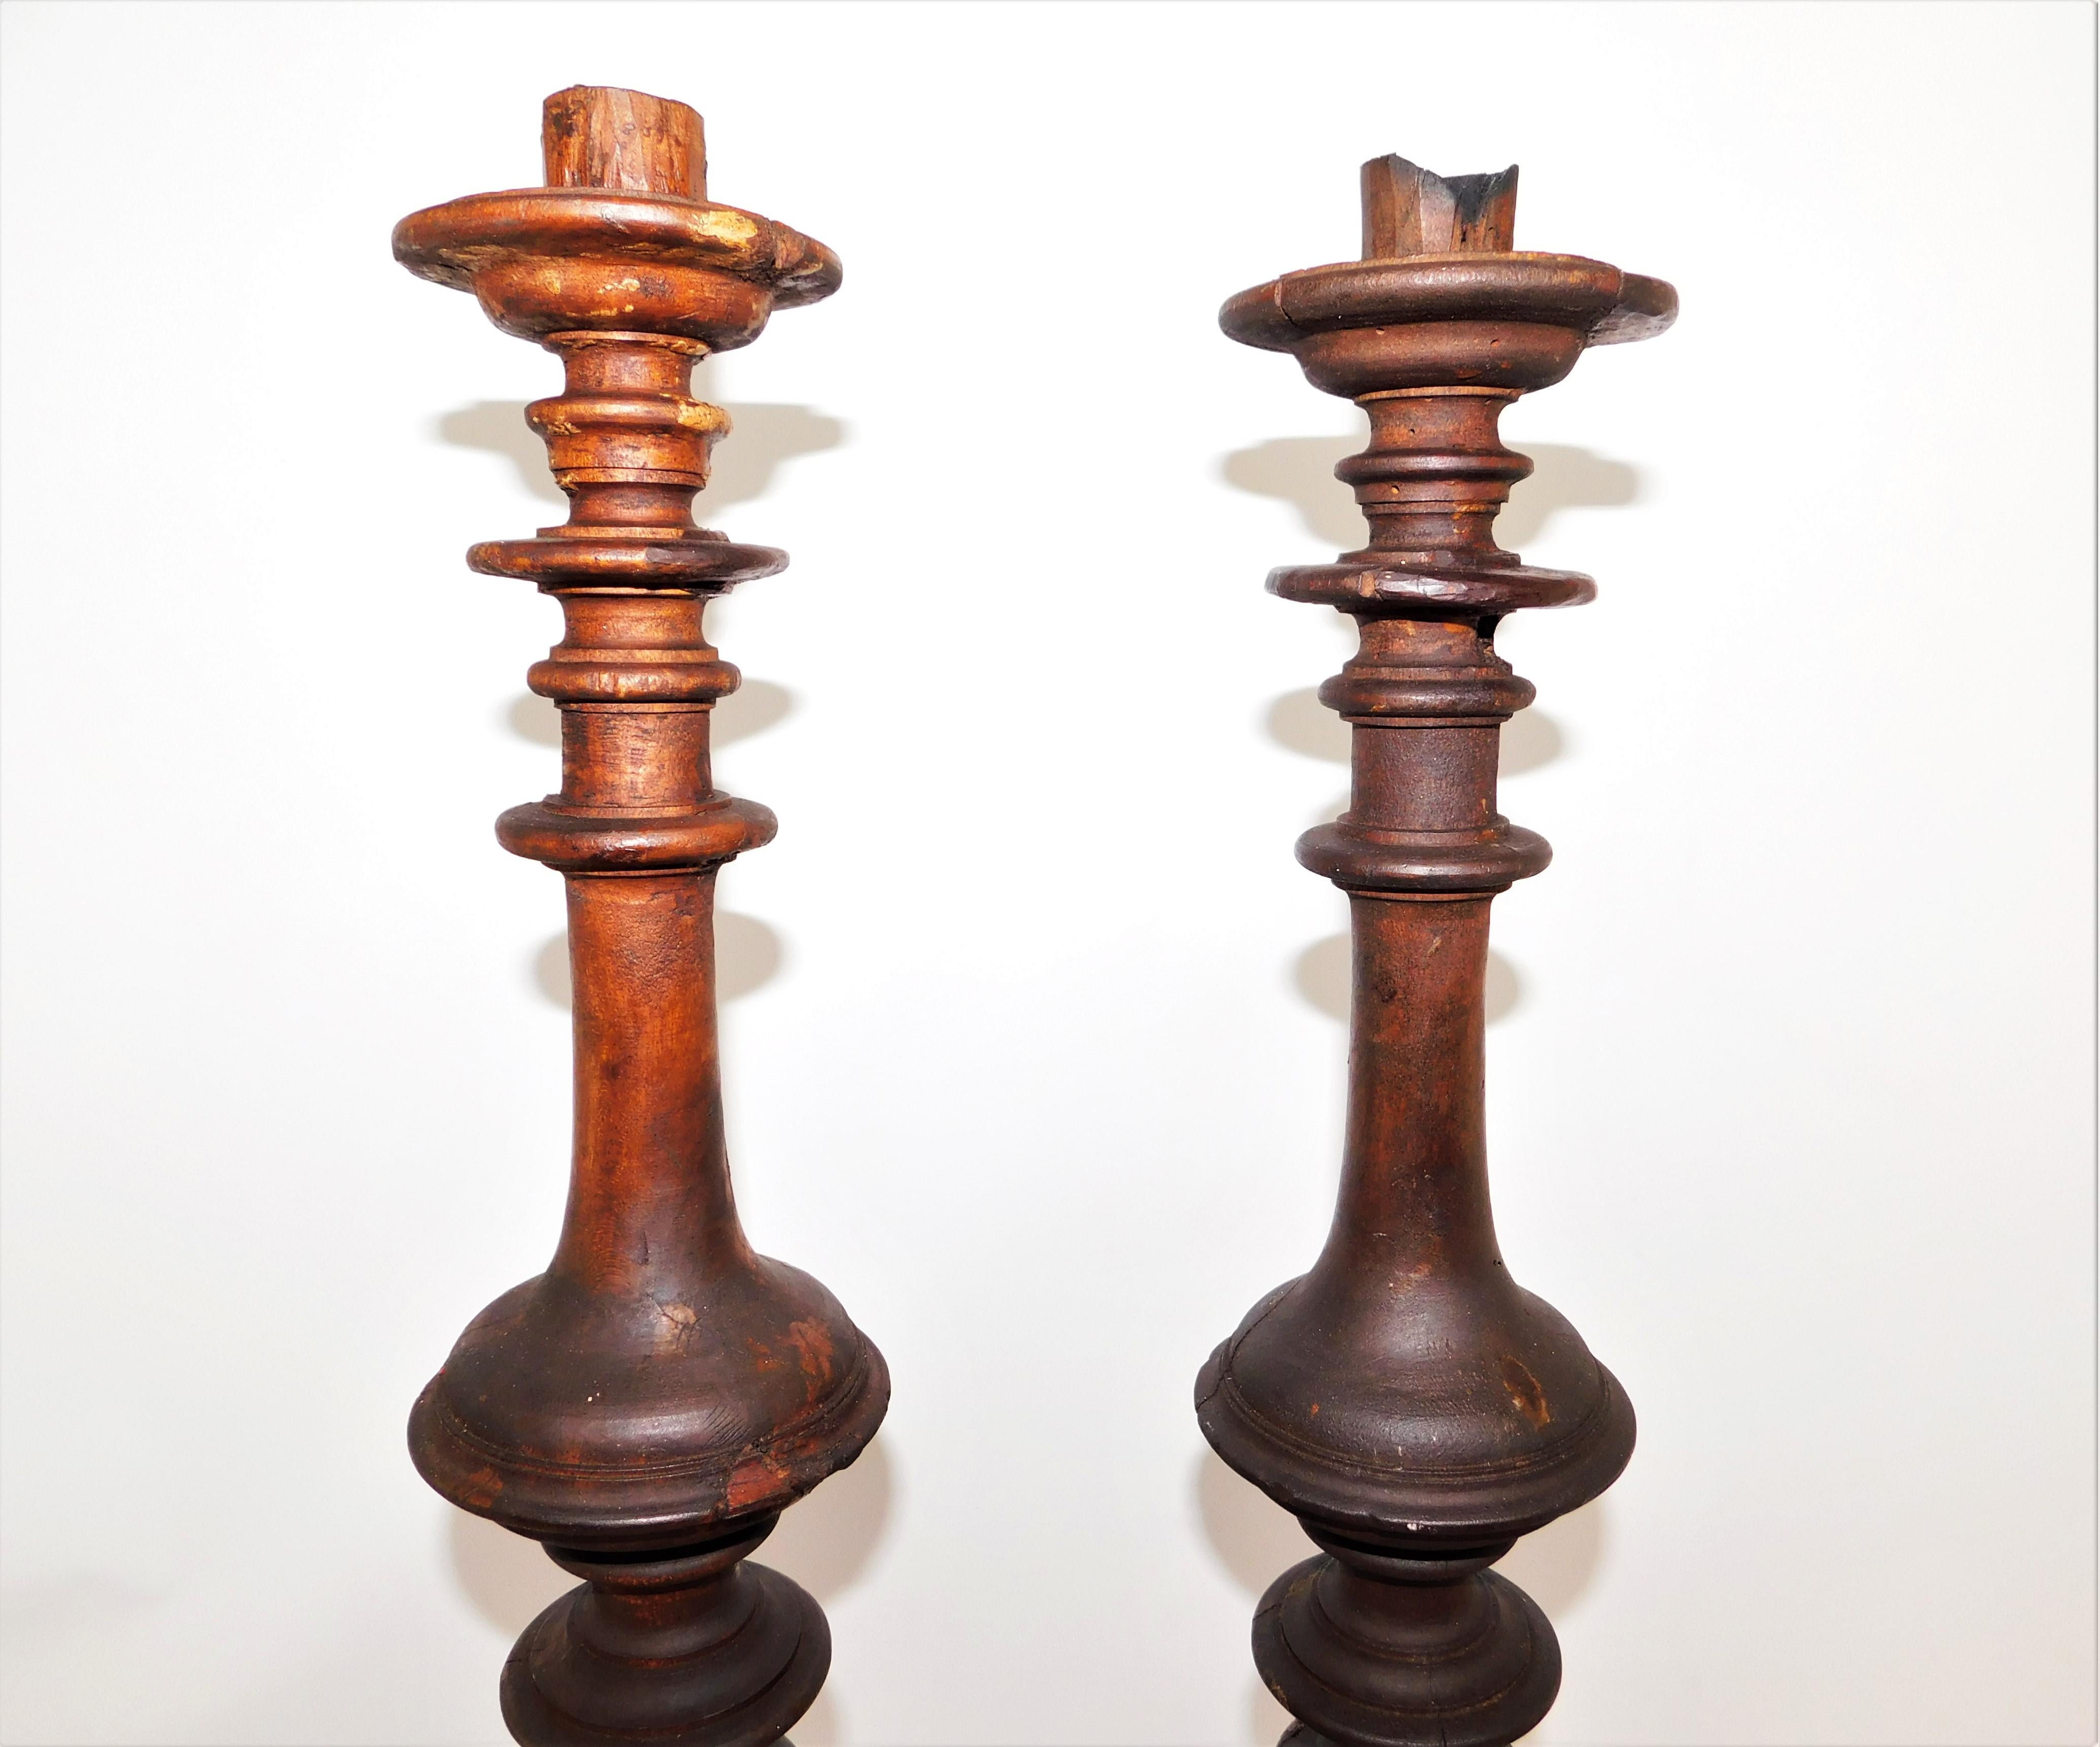 Paar hohe architektonische Stücke Mitte des 19. Jahrhunderts traditionellen rustikalen Holz-Kerzenständer. Handgeschnitzt von einem unbekannten Hersteller, europäisch. Im ursprünglichen Zustand, Verschleiß im Einklang mit Alter und Nutzung, die